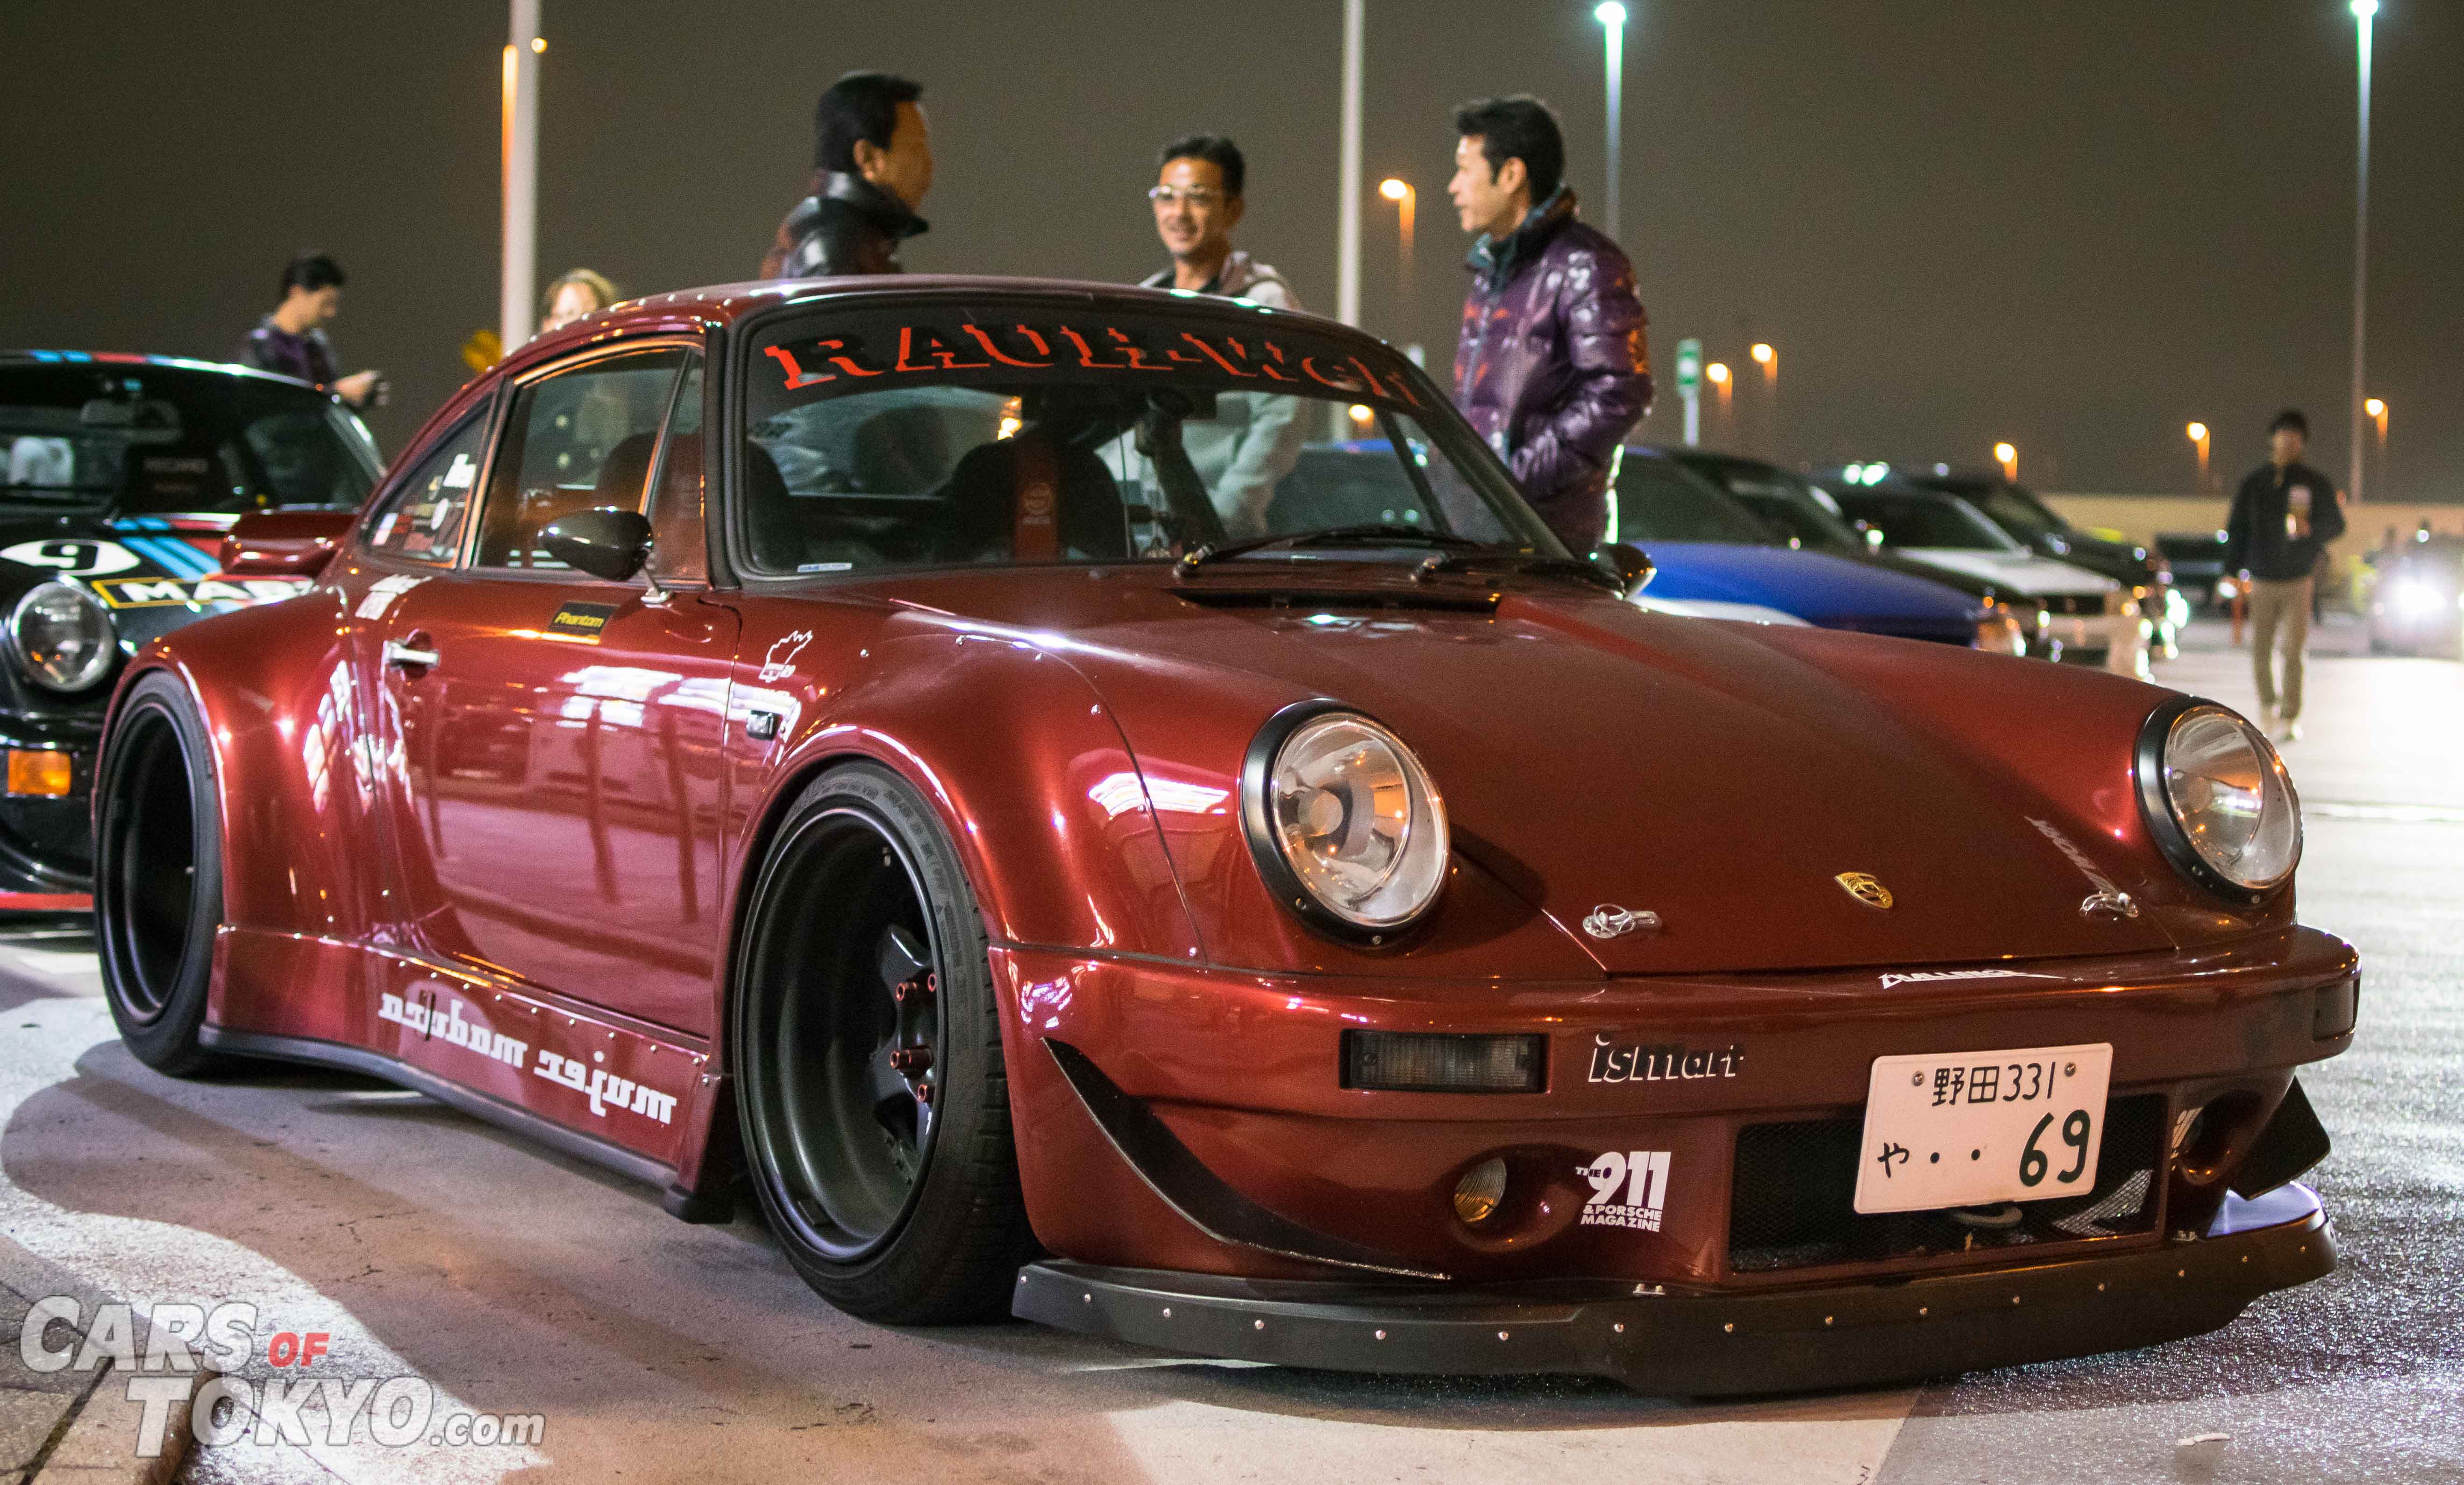 Cars of Tokyo RWB Porsche 911 964 Tatsumi